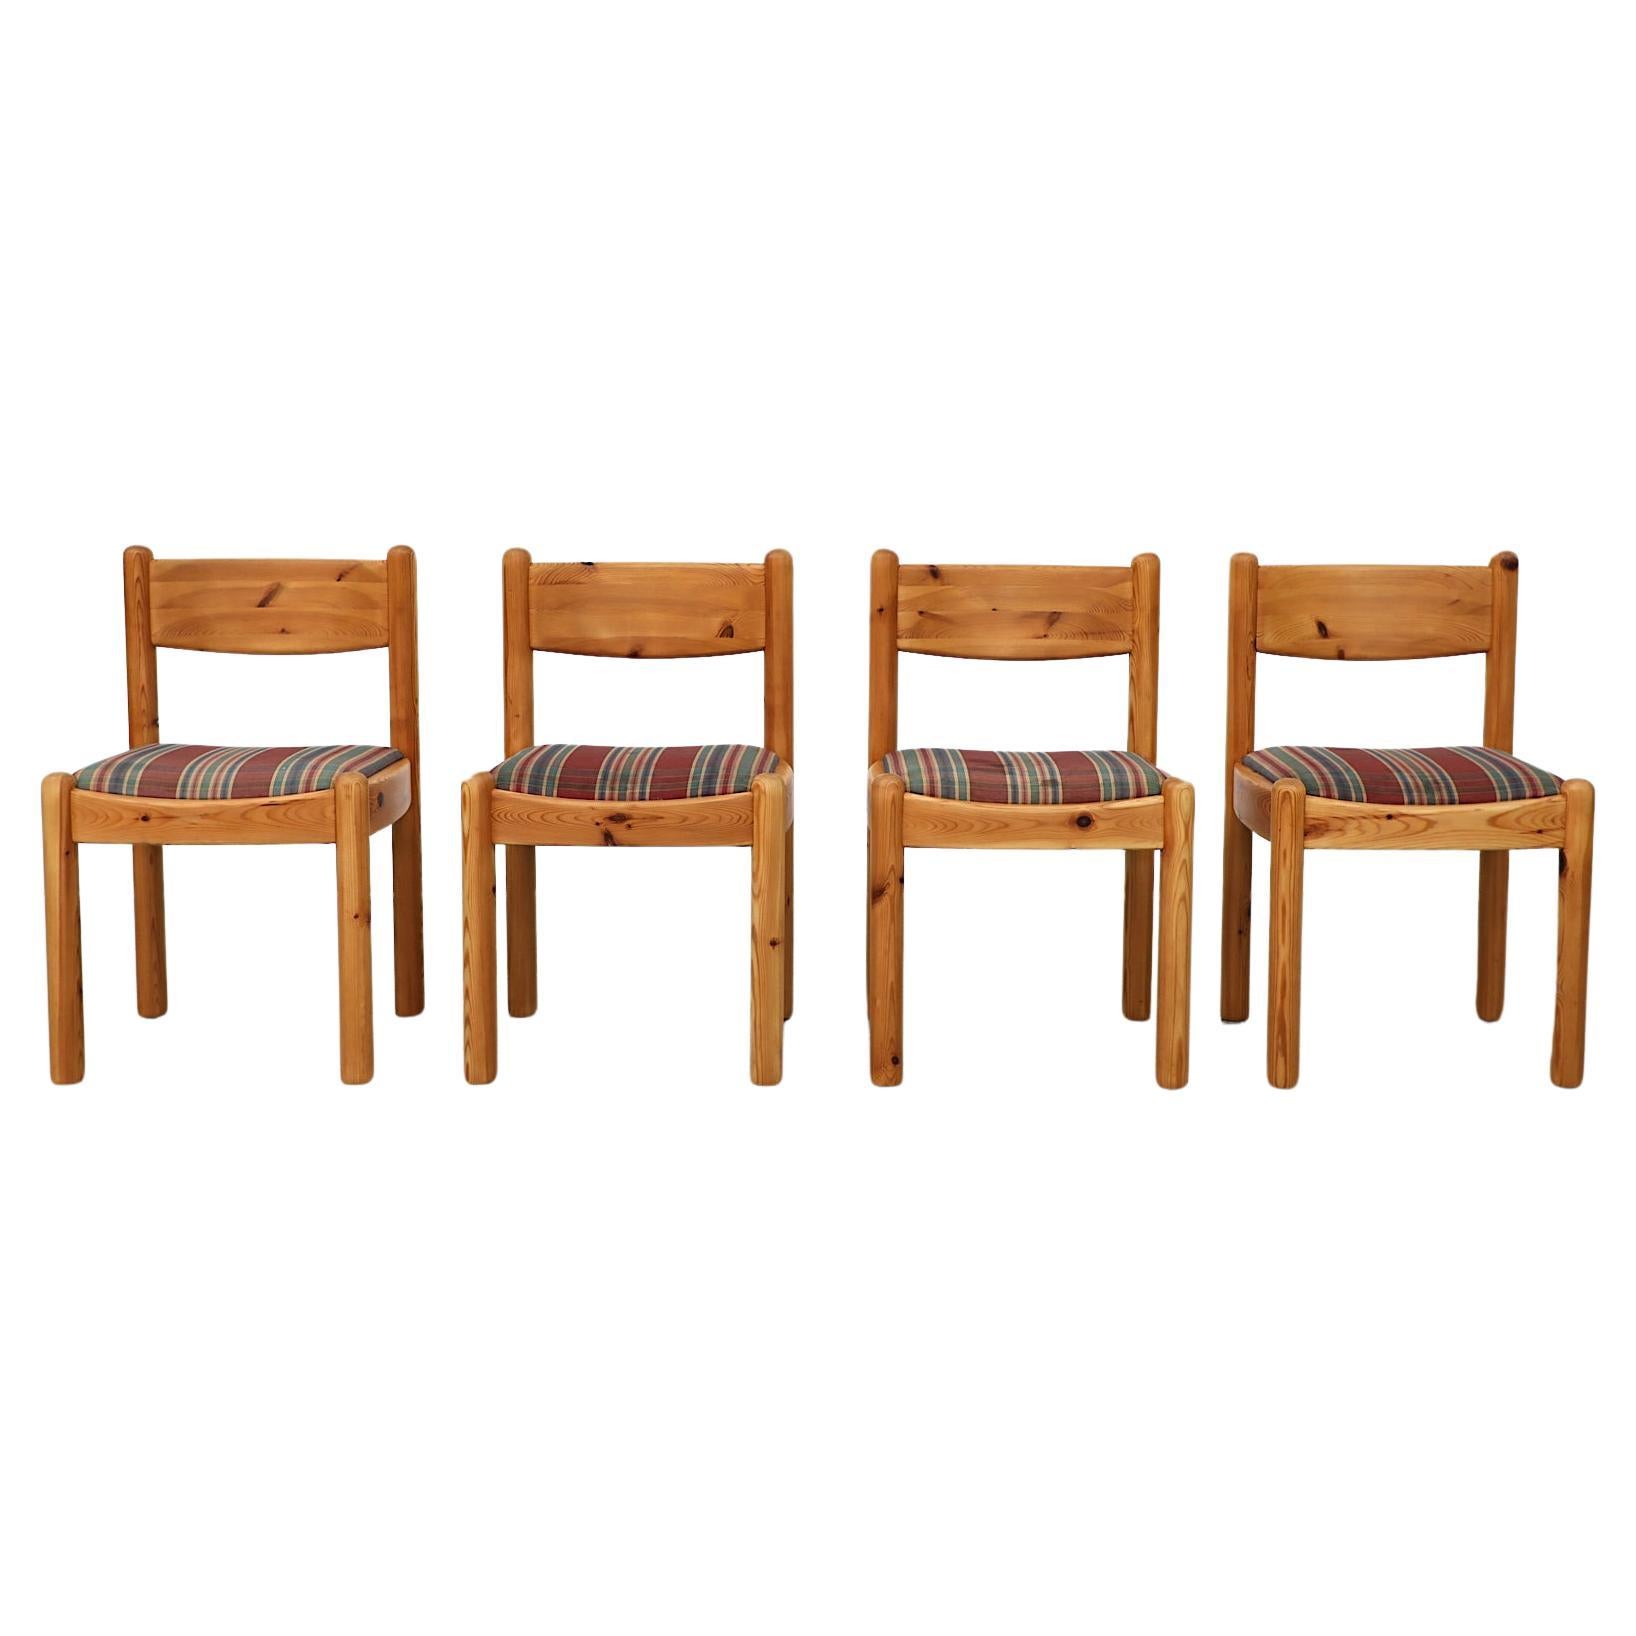 Satz von 4 Esszimmerstühlen aus Kiefernholz im Ate van Apeldoorn-Stil mit runden Beinen und karierten Sitzen